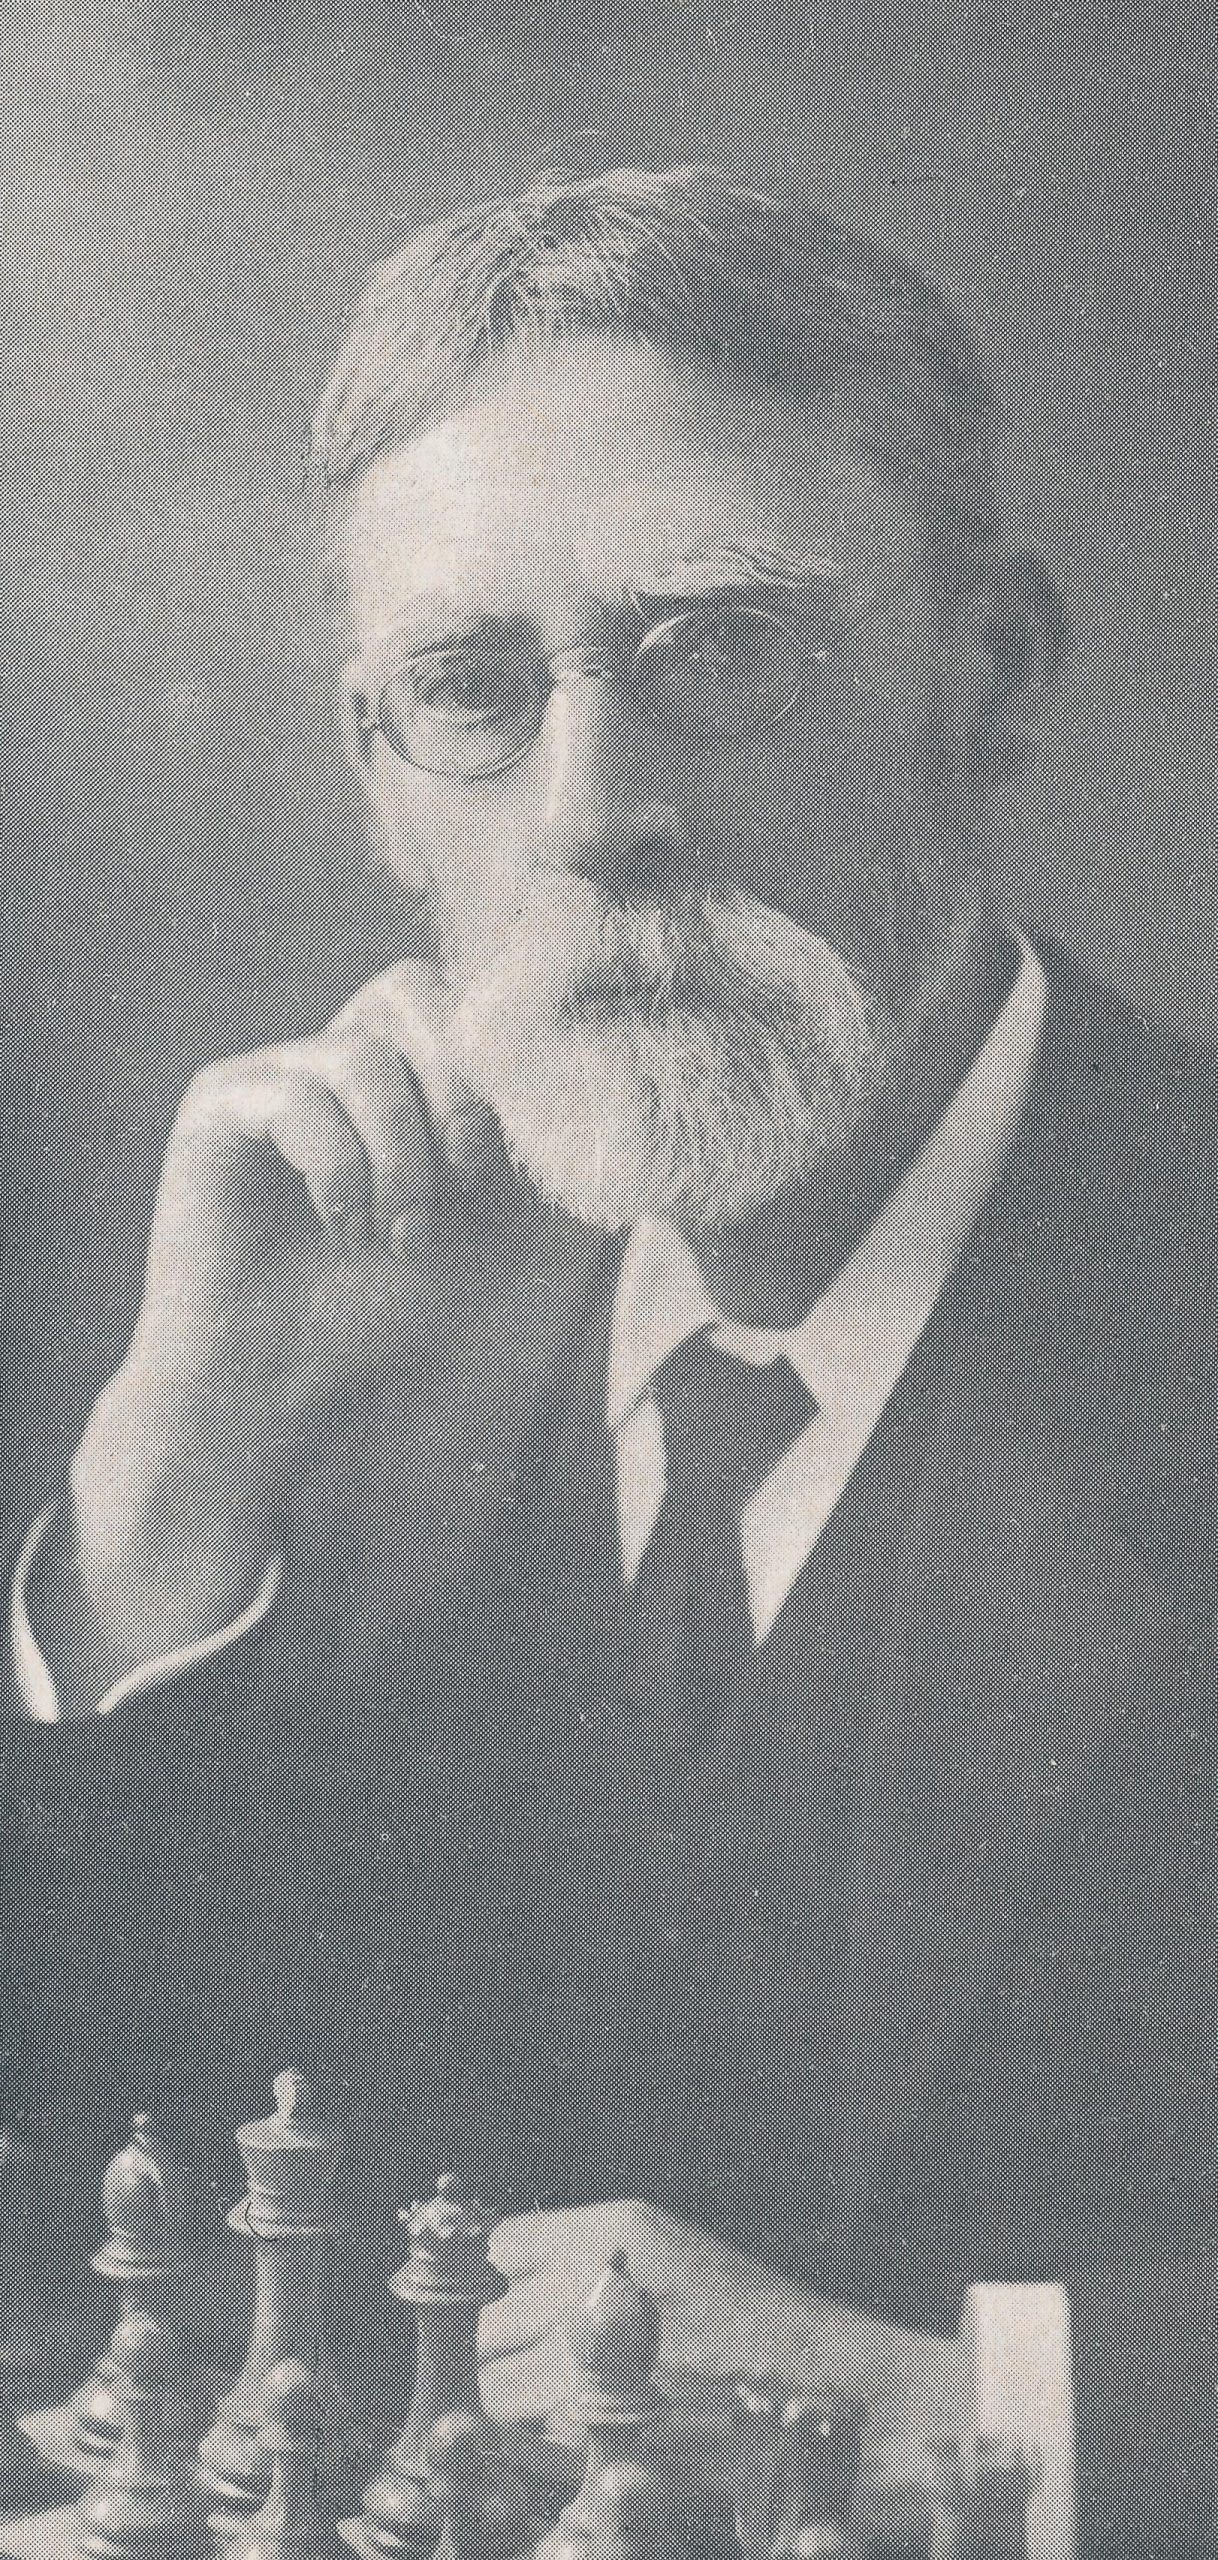 Amos Burn (31-xii-1848, 25-xii-1925)